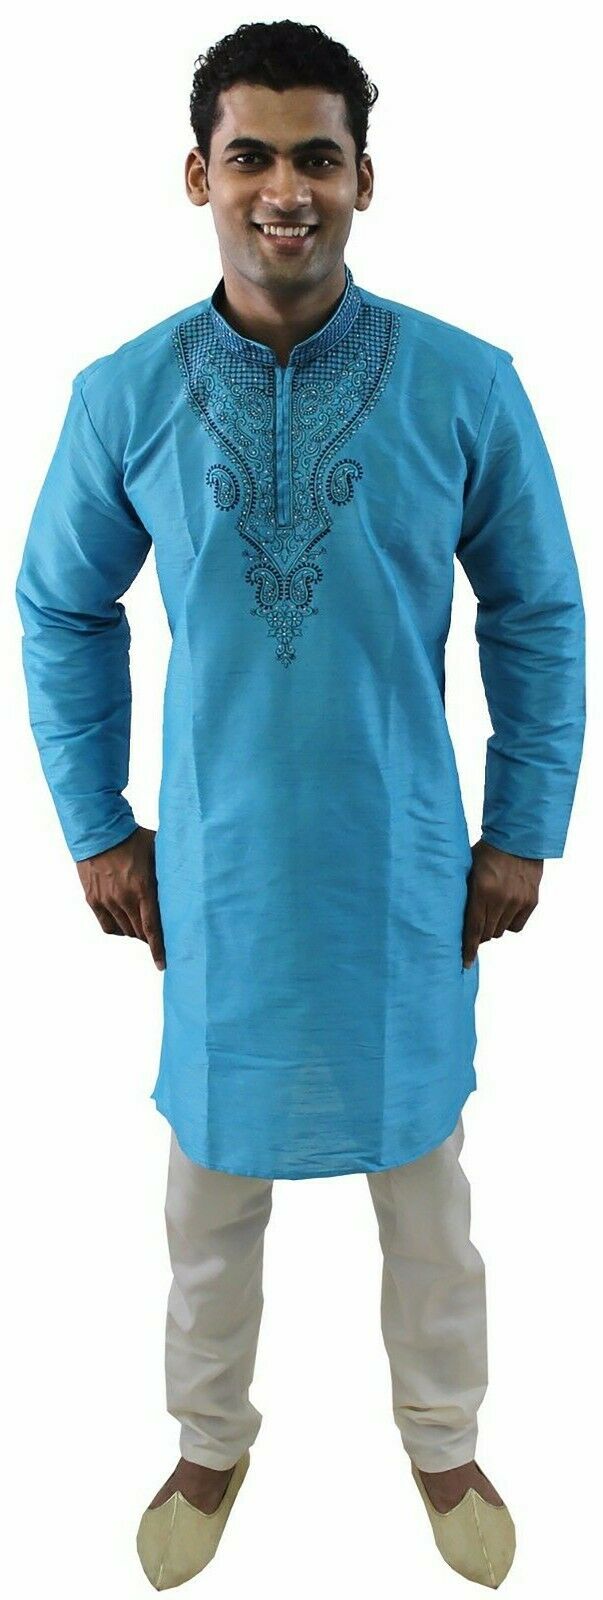 Blue Silk Designer Embroidered Indian Dress Wedding Kurta Sherwani Pajama Set